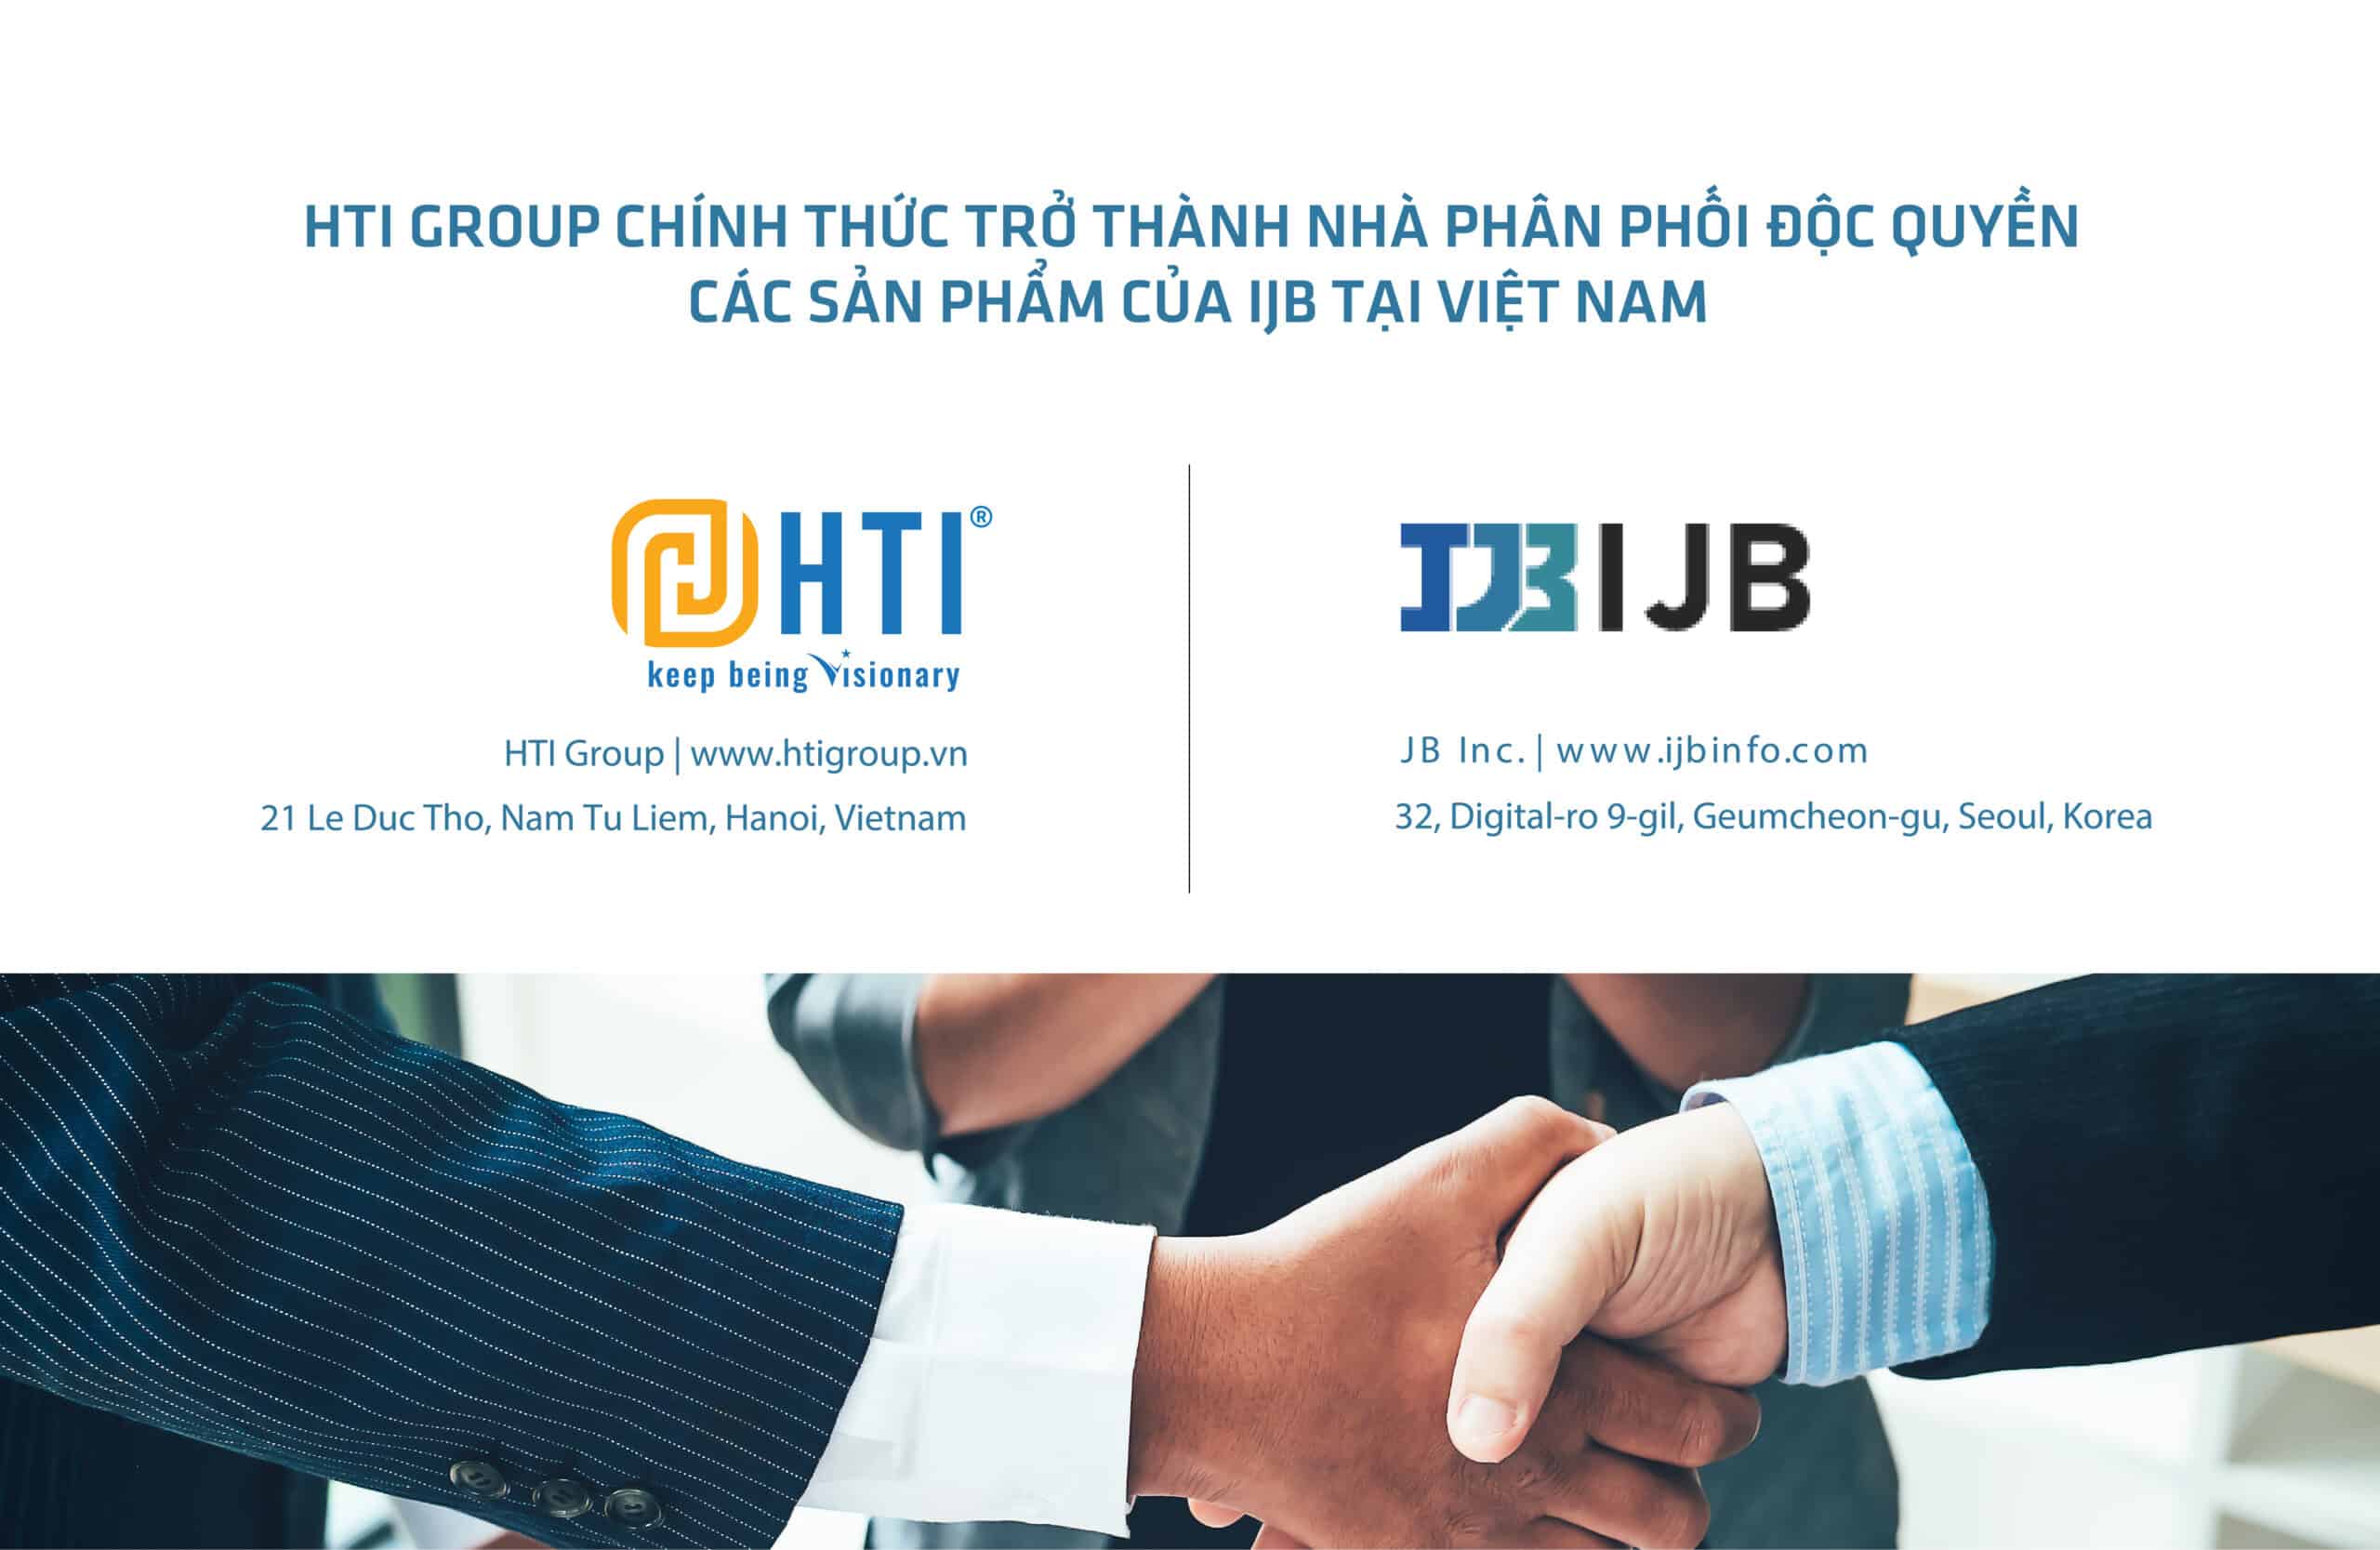 HTI Group chính thức trở thành Nhà phân phối độc quyền các sản phẩm của IJB tại Việt Nam